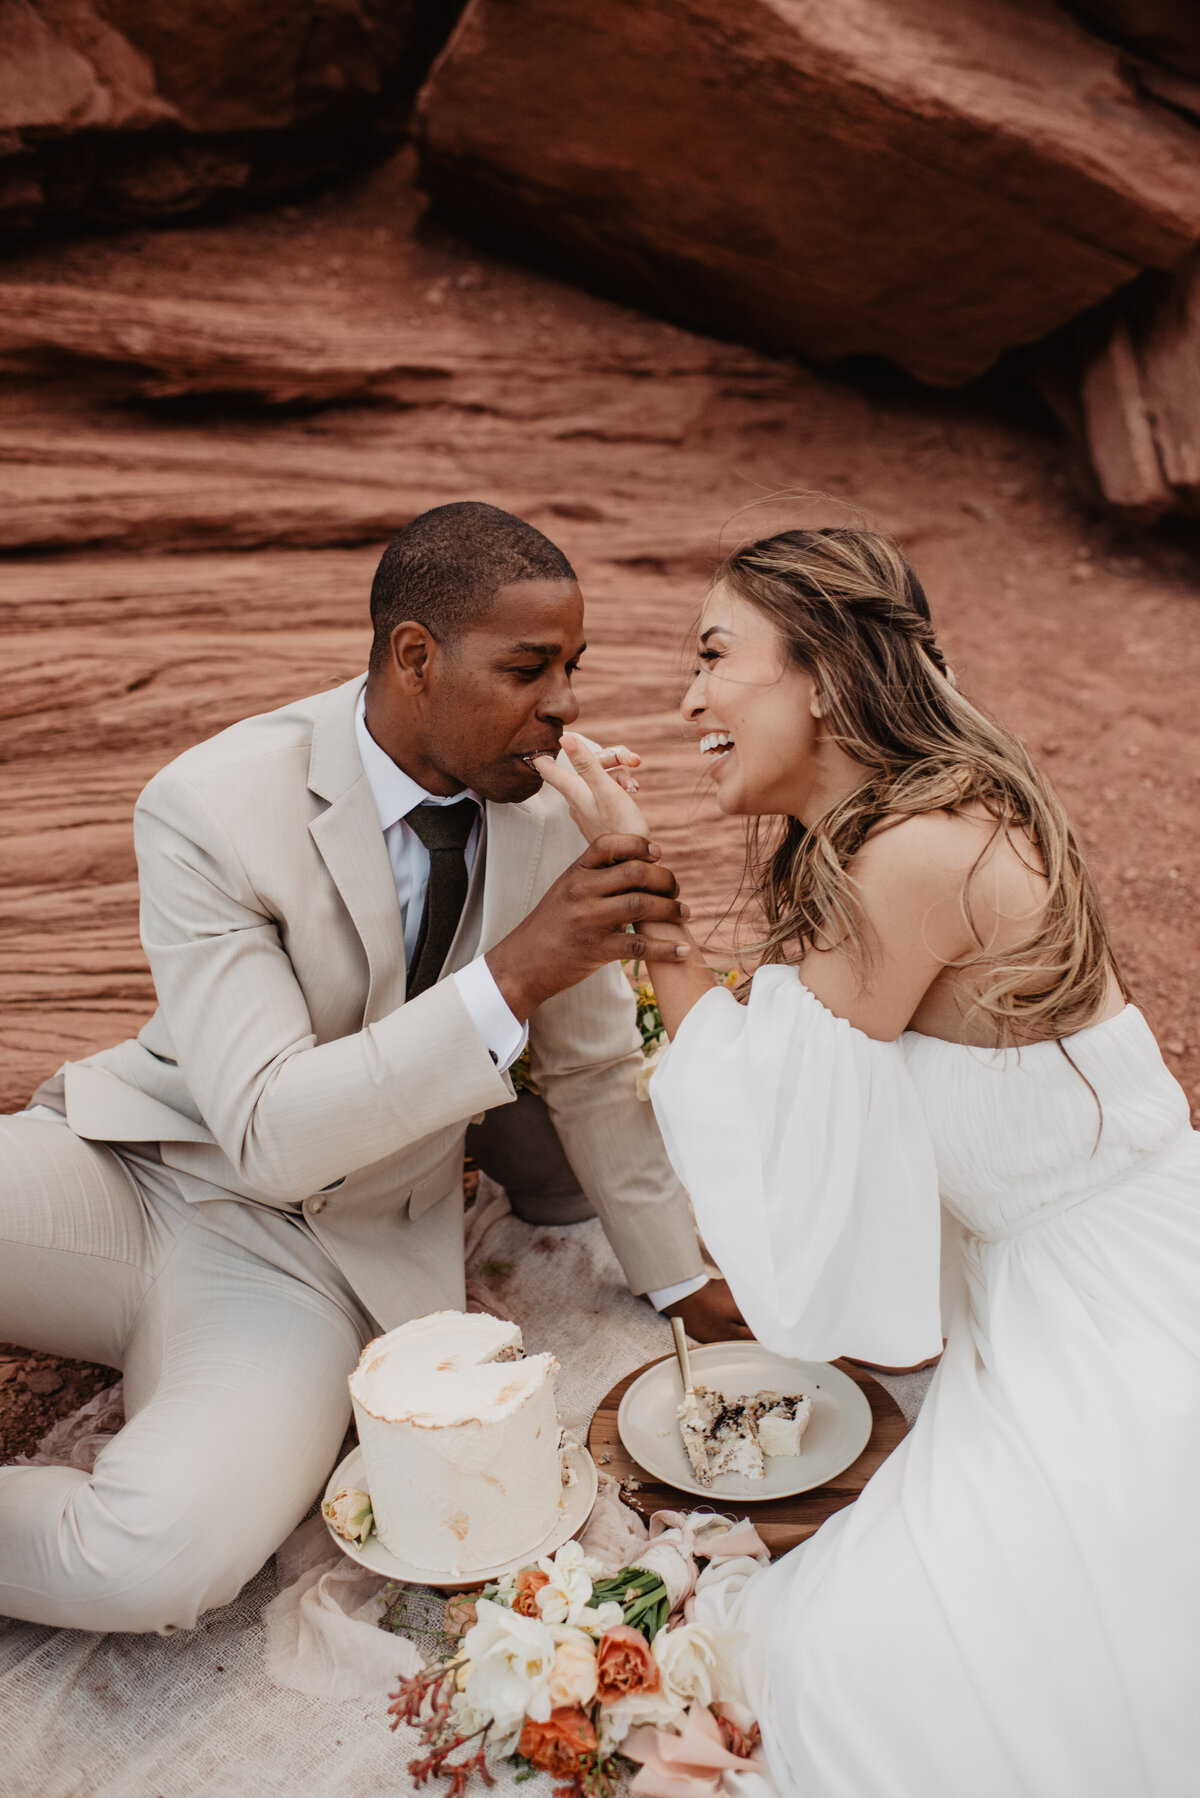 Utah Elopement Photographer captures bride's fingers